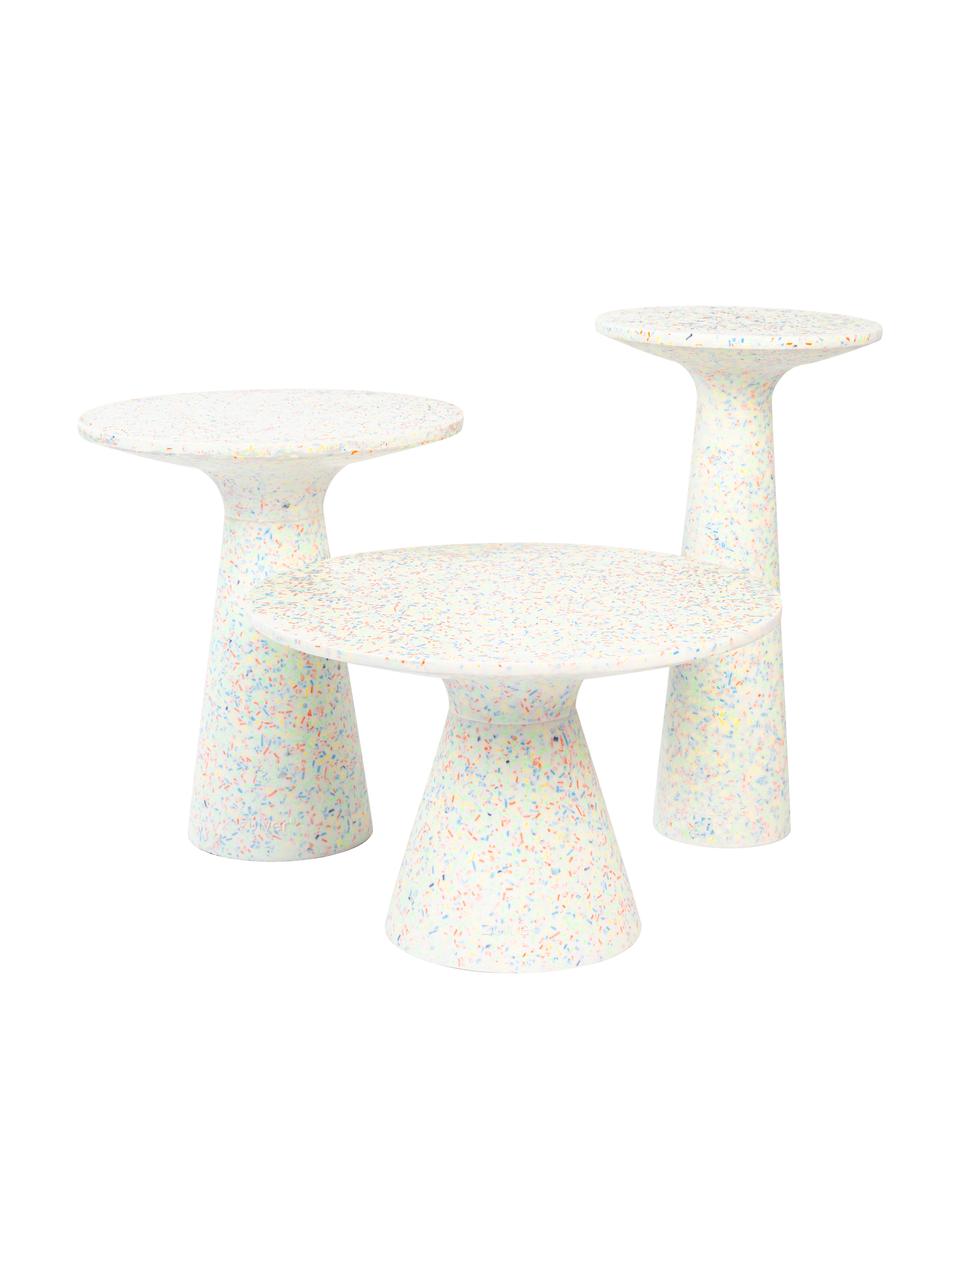 Ogrodowy stolik pomocniczy z tworzywa sztucznego z recyklingu Victoria, Lastriko, tworzywo sztuczne z recyklingu, poliresing, Biały, wielobarwny, Ø 30 x W 56 cm